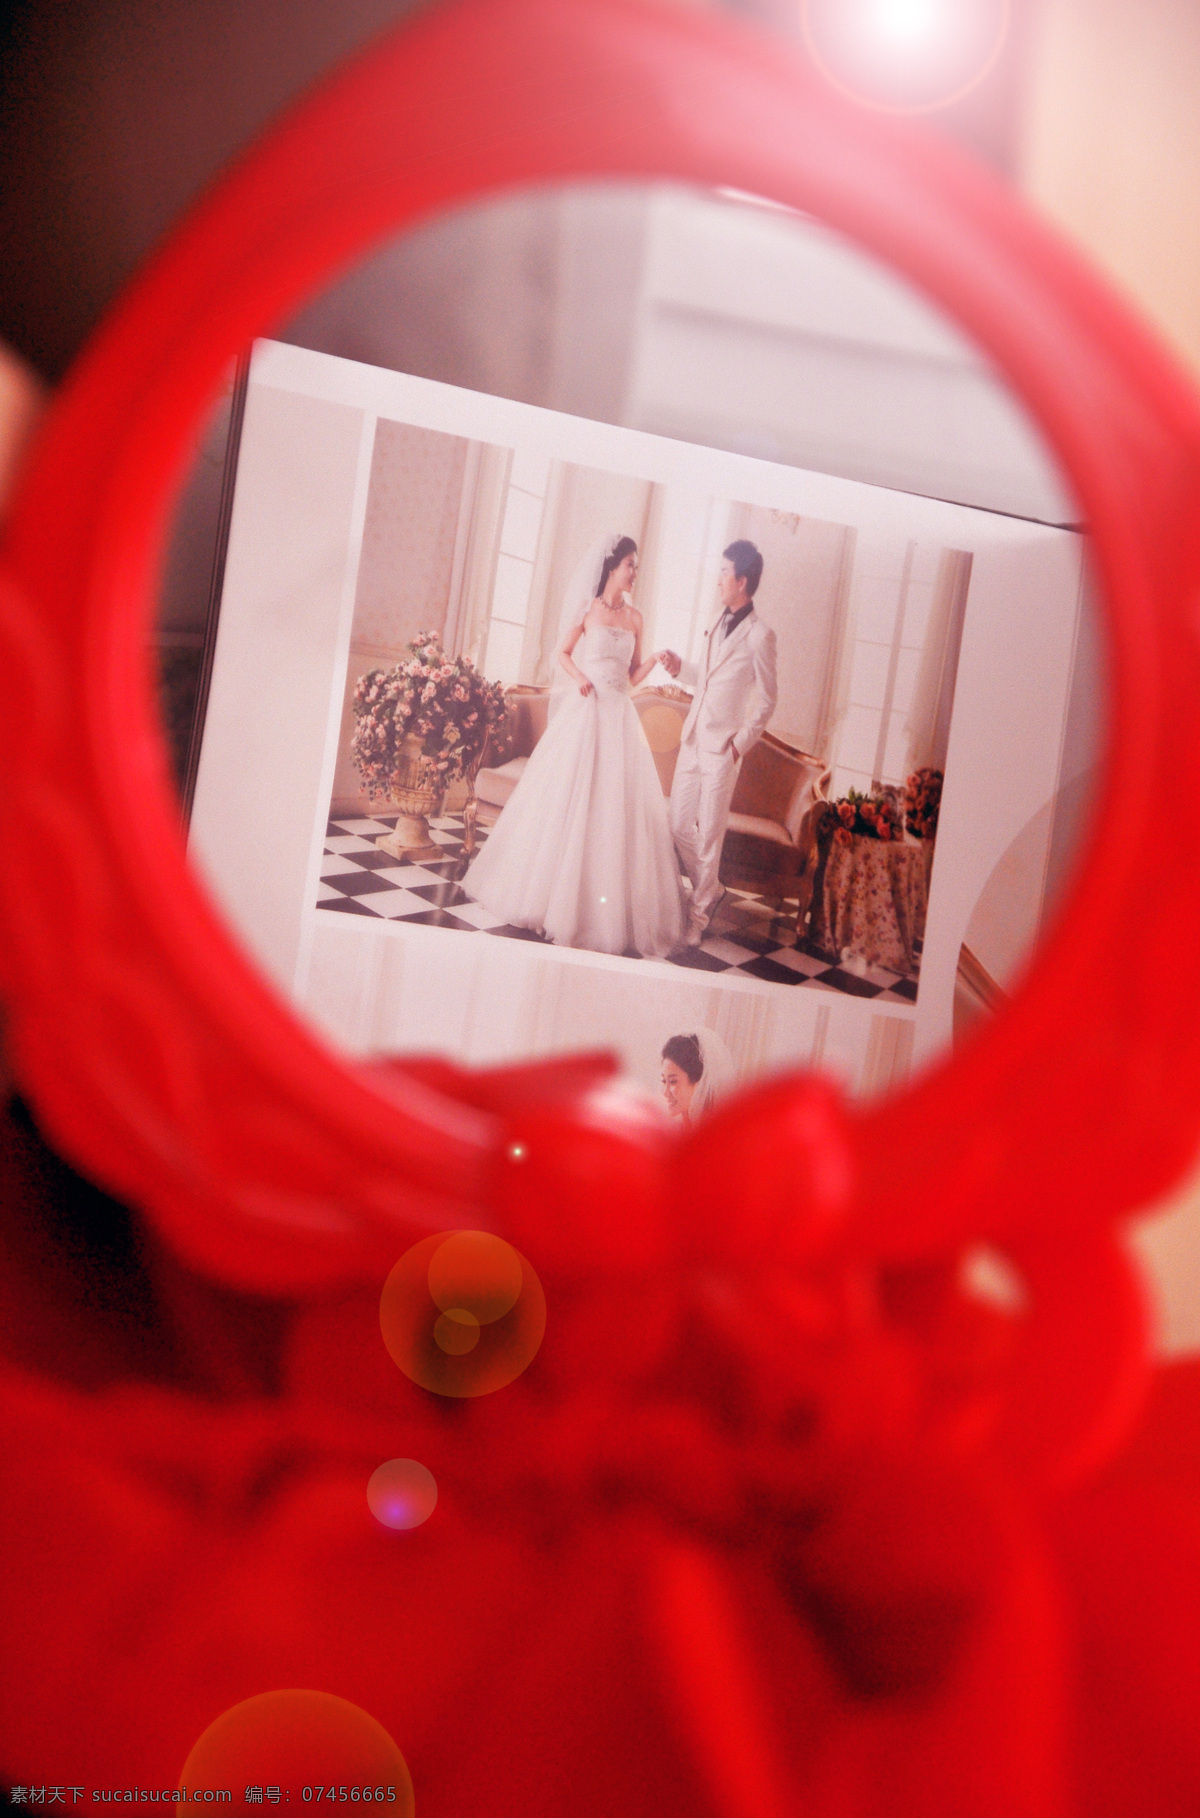 想 出来 爱 婚礼 结婚 人物摄影 人物图库 笑容 写真 想出来的爱 跟拍 抓拍 psd源文件 婚纱 儿童 相册 模板